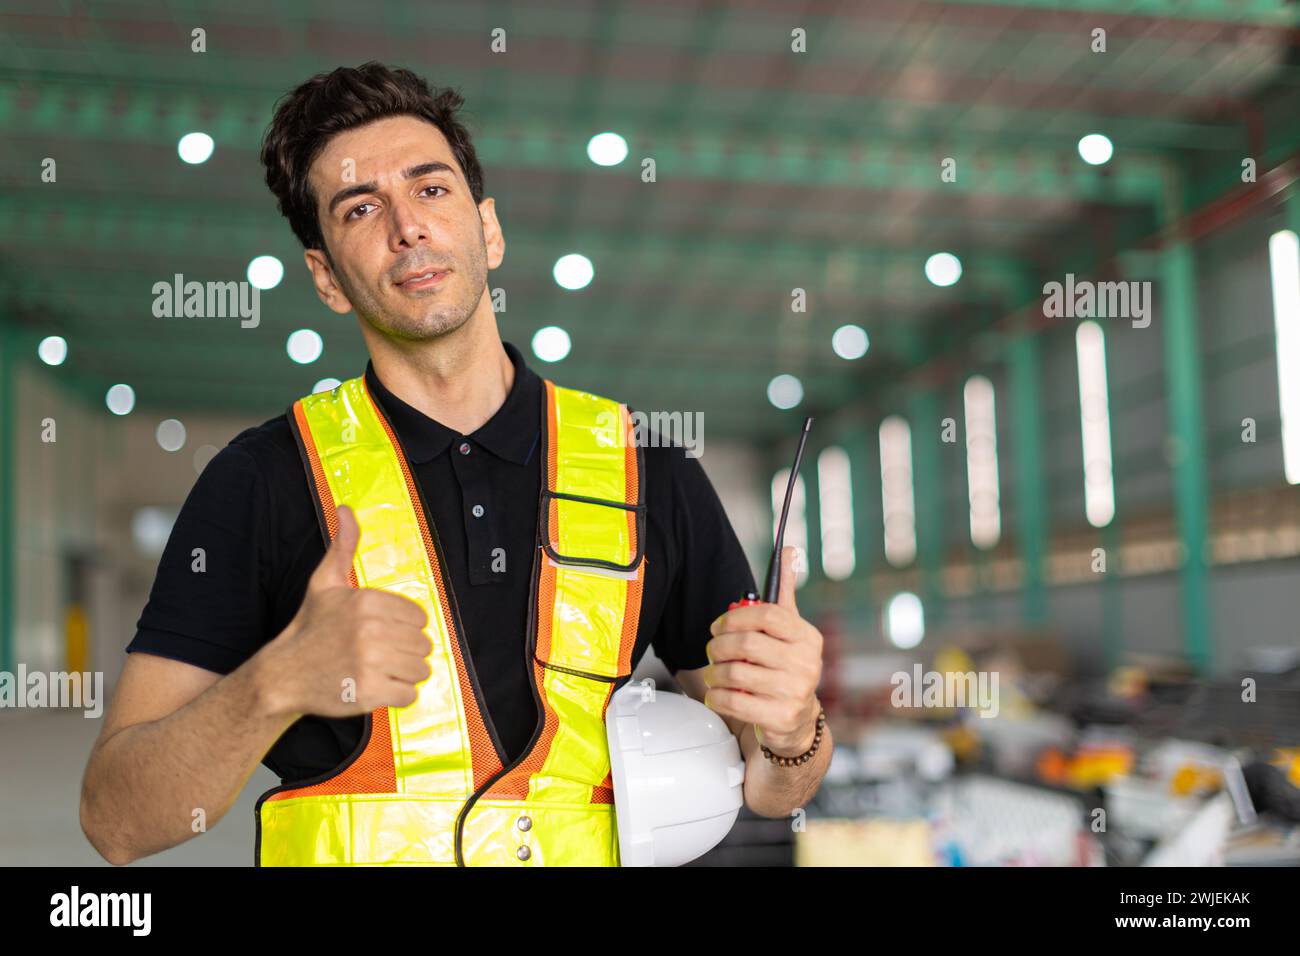 Ingenieur Mann Hand wie Schild oder Fabrikarbeiter tragen Sicherheitshelm in der Lagerhausstelle innen zeigt Daumen hoch Happy Smile. Gute Arbeit erledigt Stockfoto